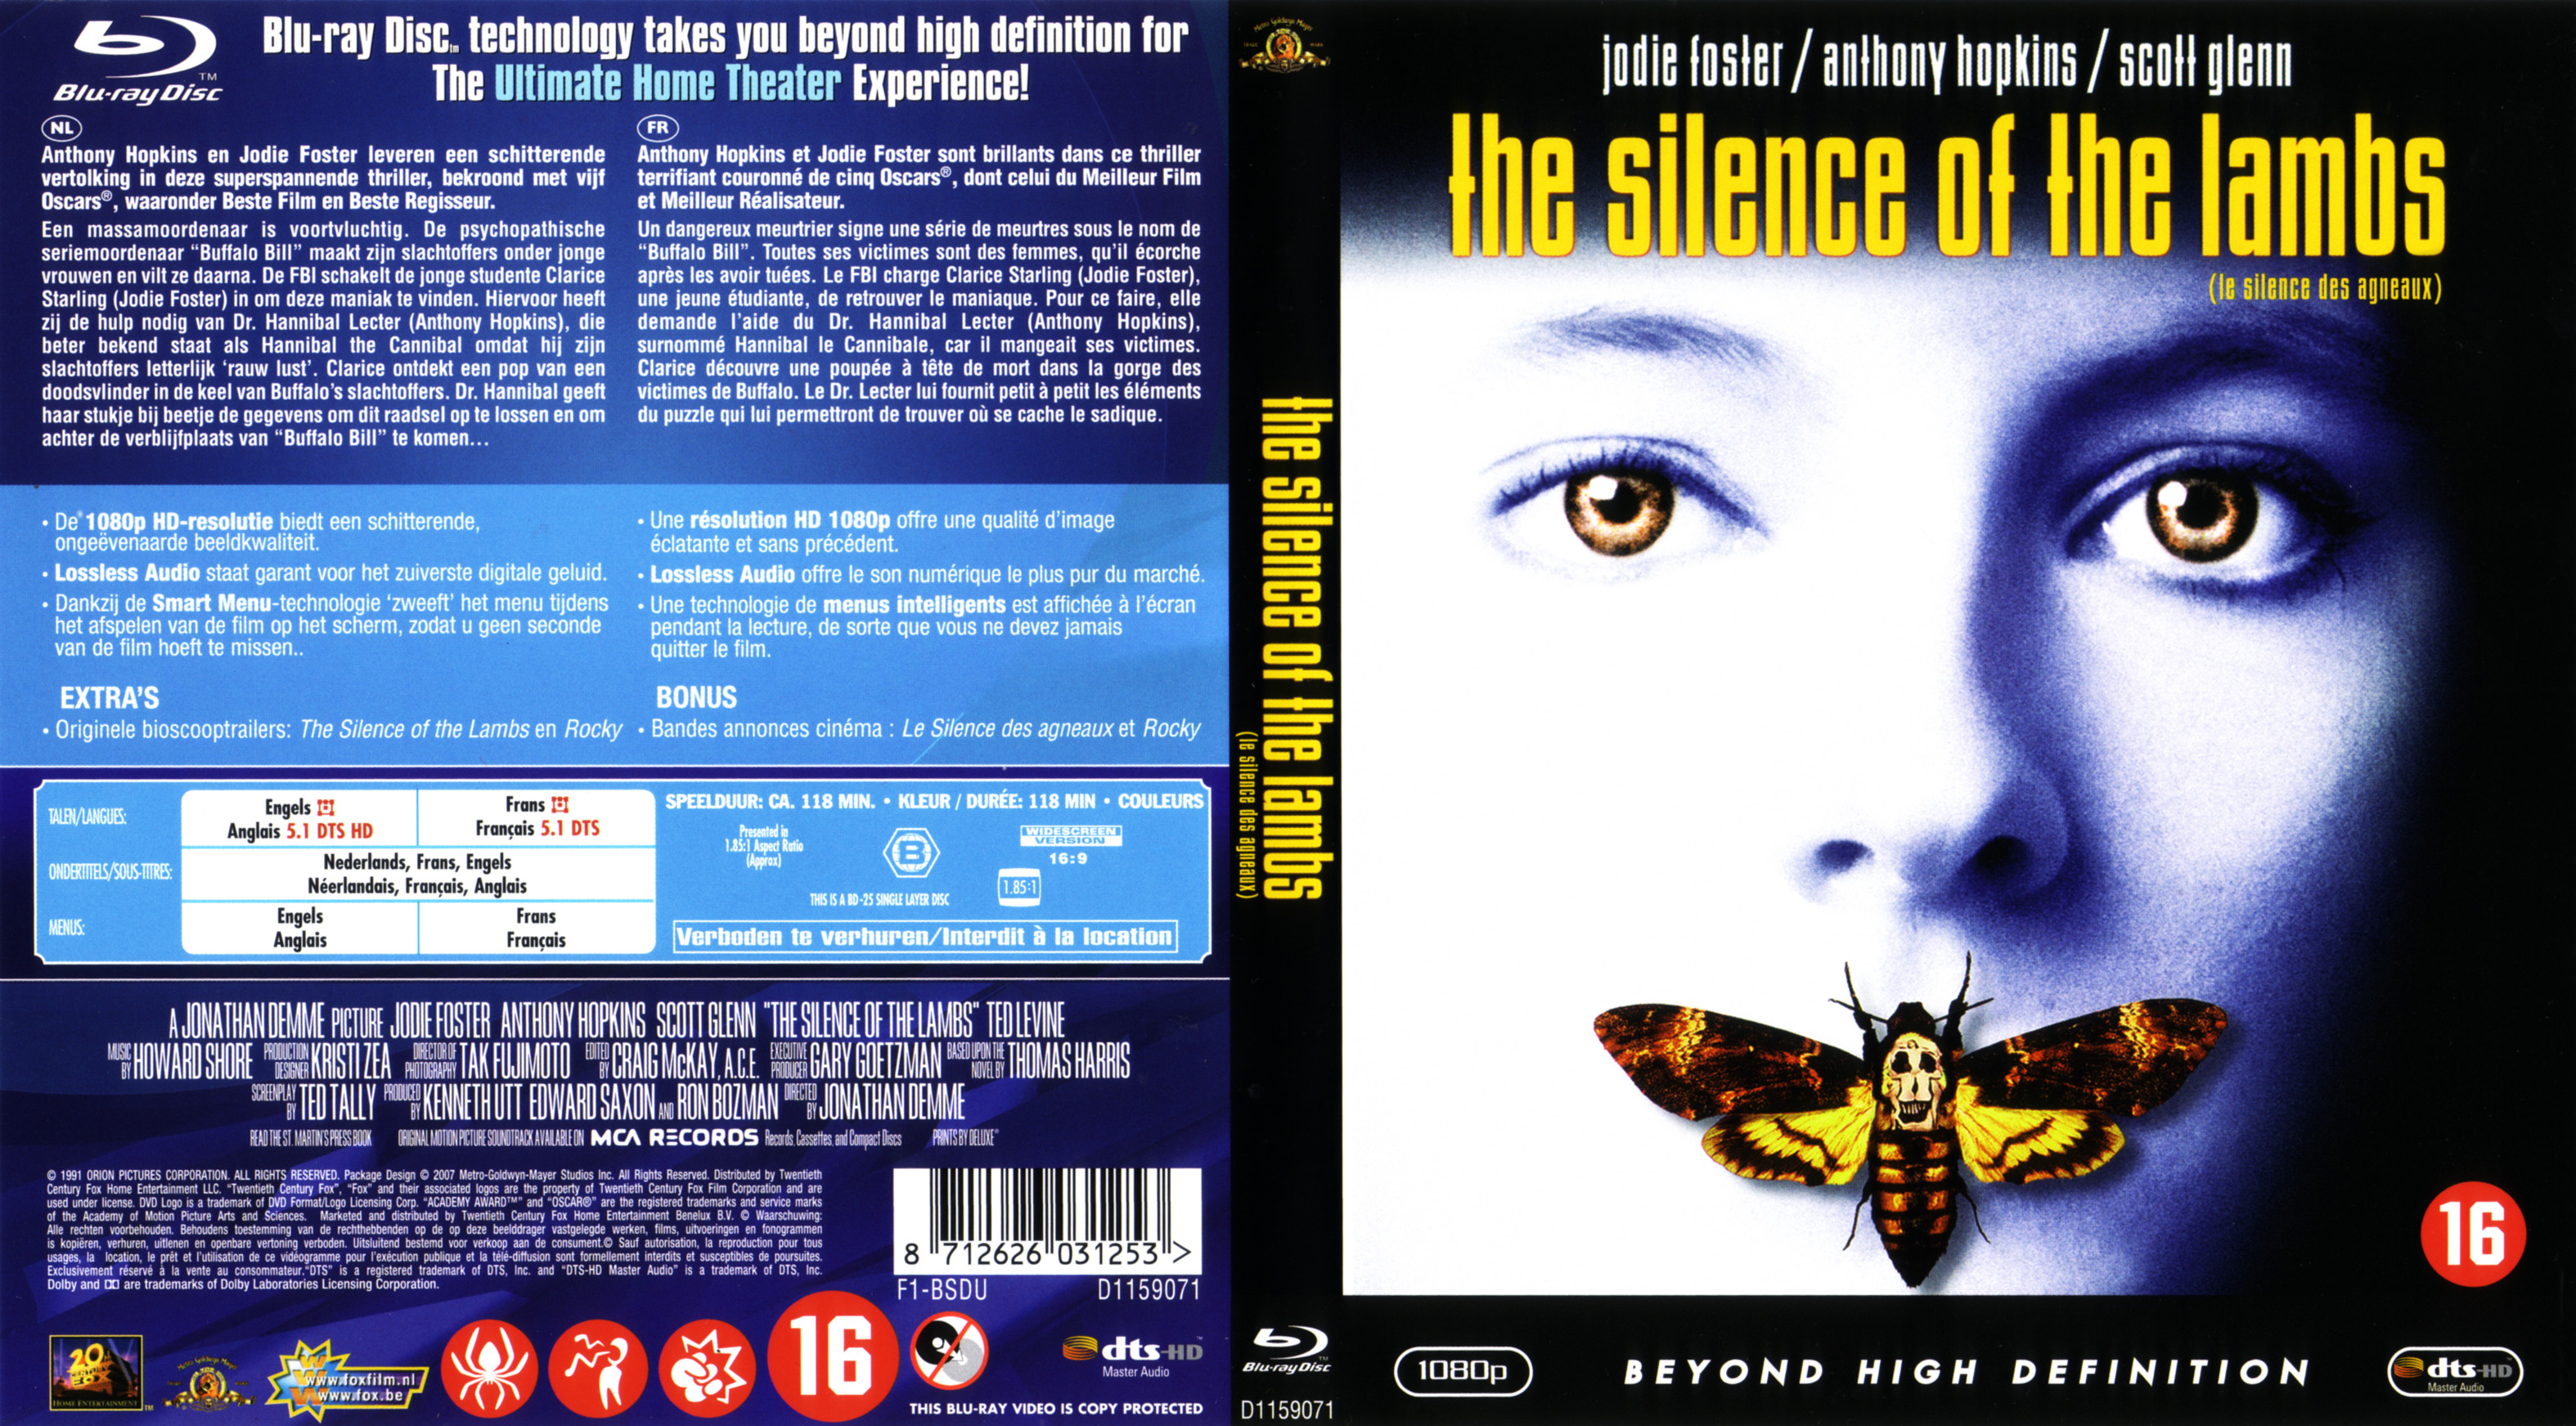 Jaquette DVD Le silence des agneaux (BLU-RAY) v2